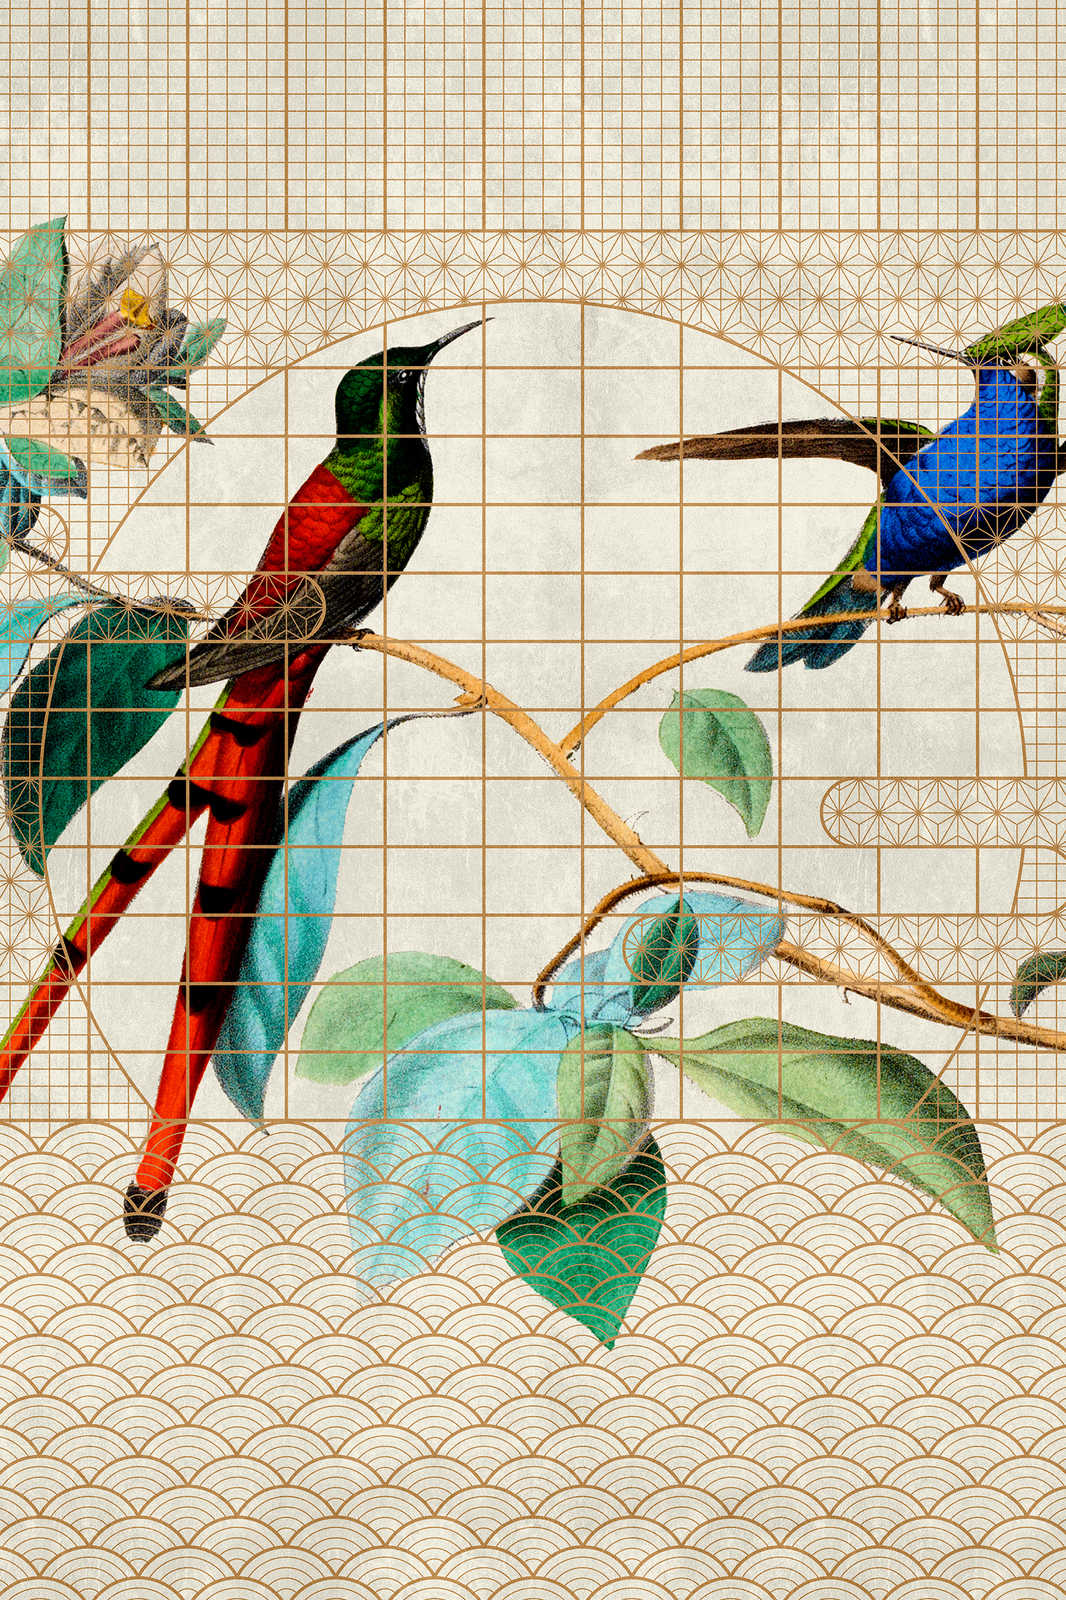             Pajarera 2 - Aves Cuadro en lienzo Pájaros cantores en una jaula dorada - 1,20 m x 0,80 m
        